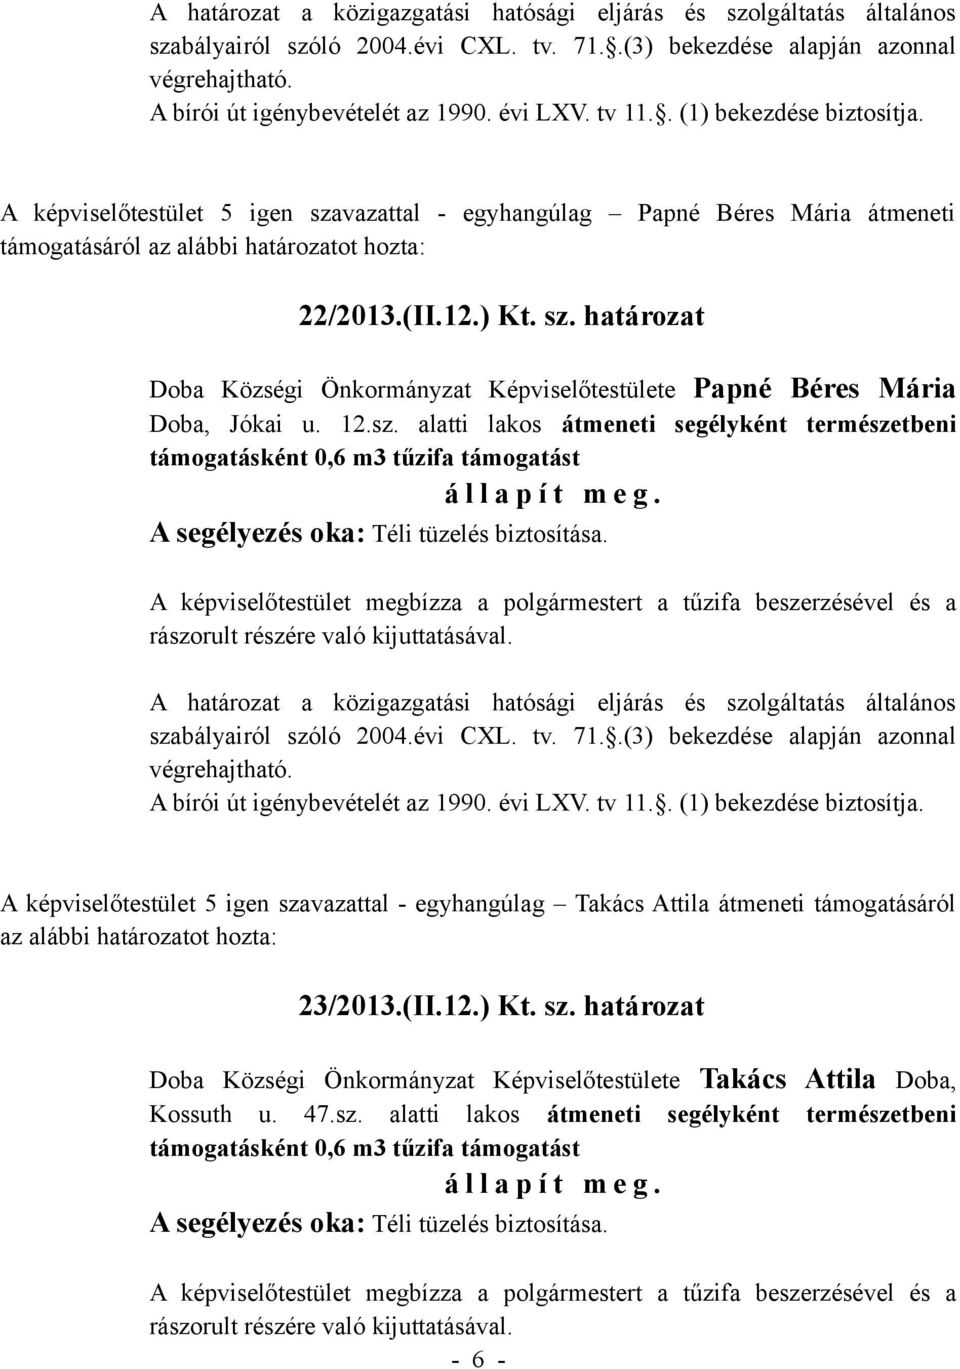 természetbeni A képviselőtestület 5 igen szavazattal - egyhangúlag Takács Attila átmeneti támogatásáról az alábbi határozatot hozta: 23/2013.(II.